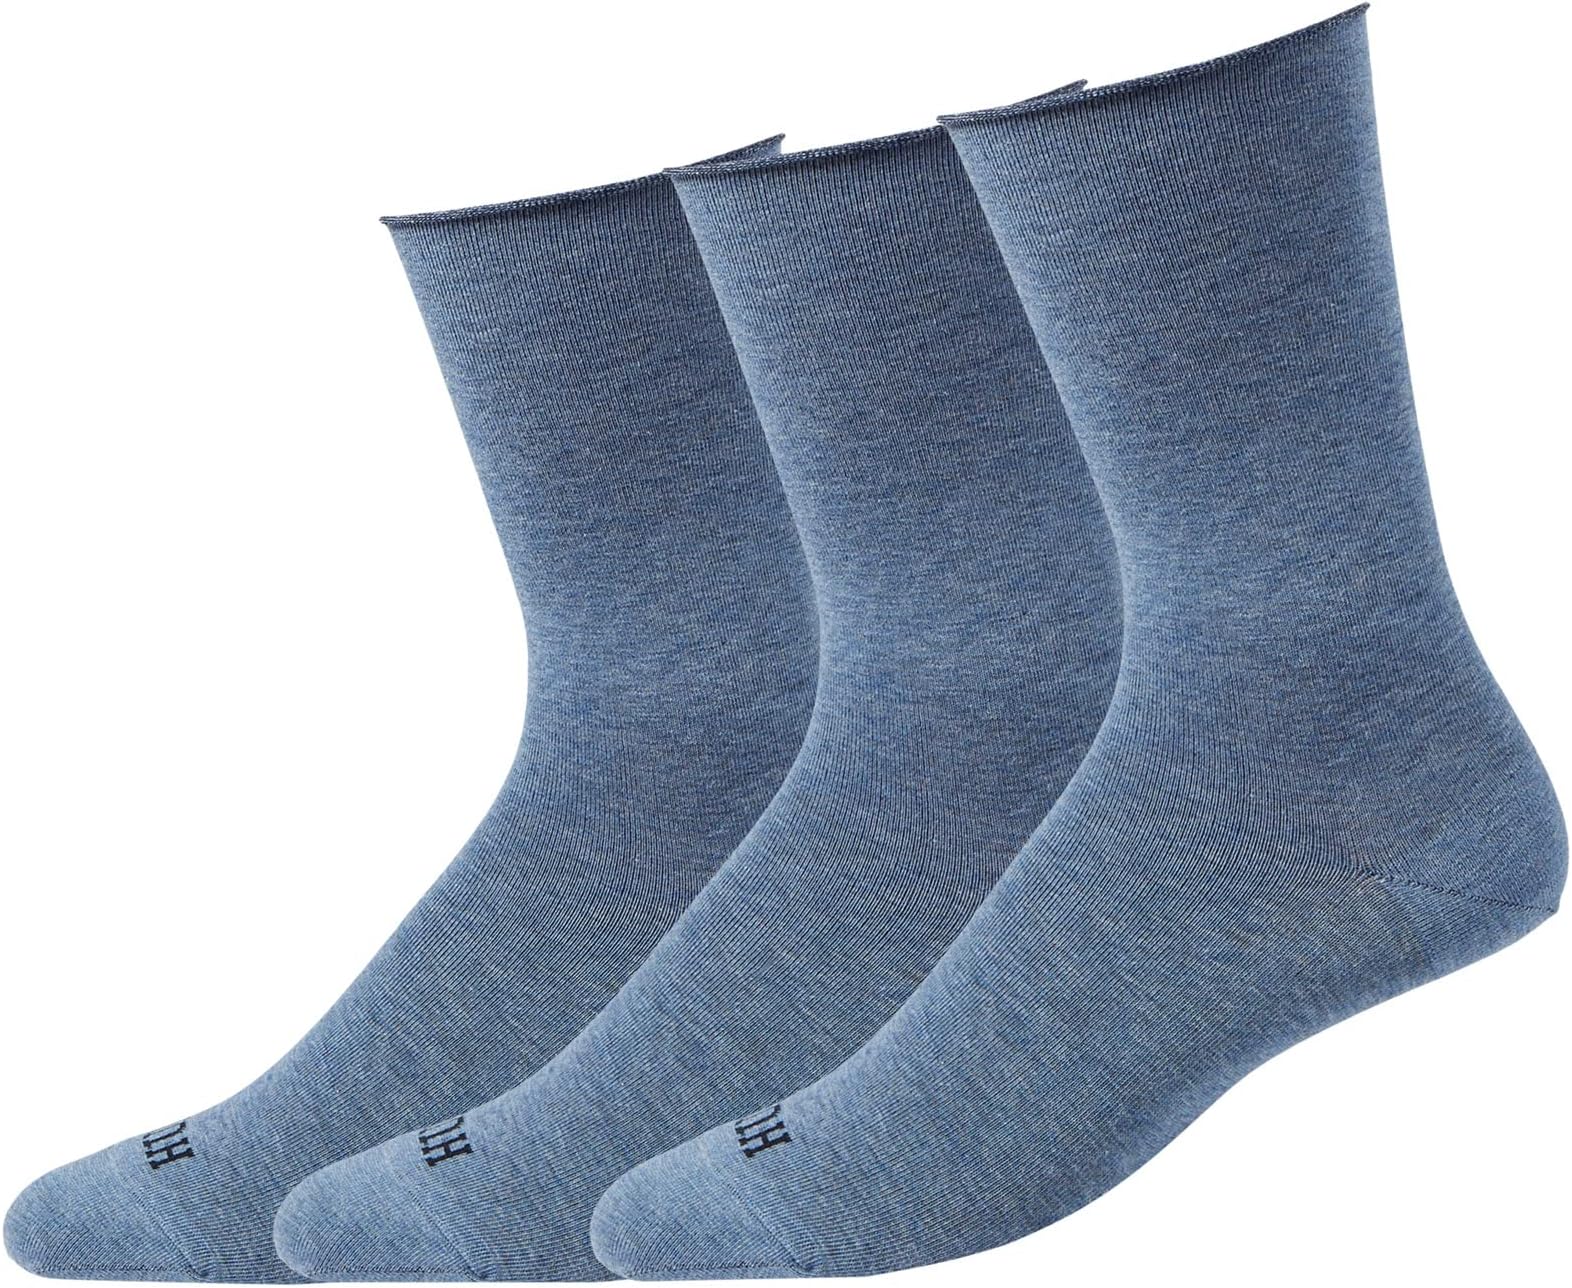 Джинсовые носки, 3 пары HUE, цвет Denim Heather